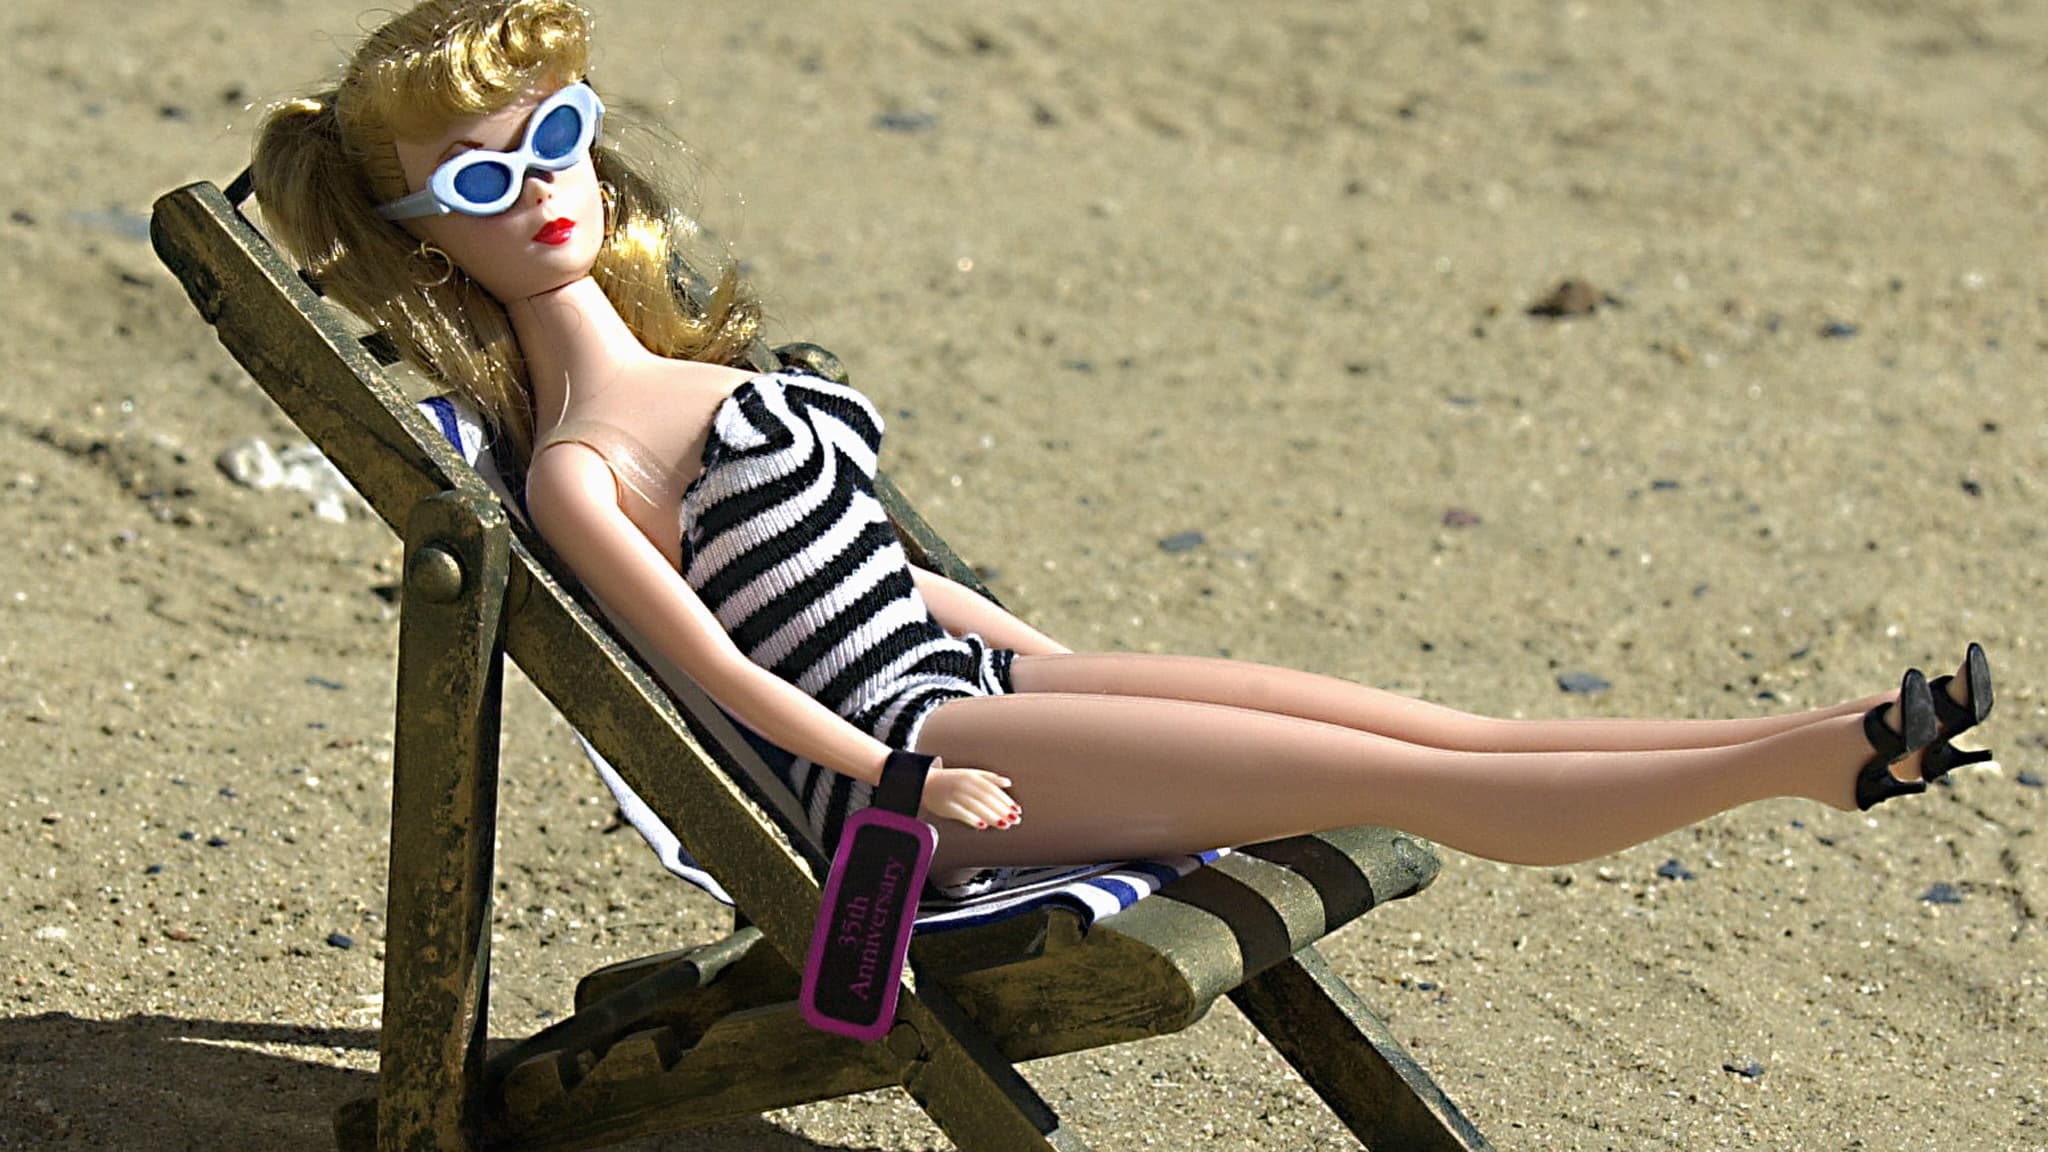 Barbie en français Jouets Poupées Histoires 